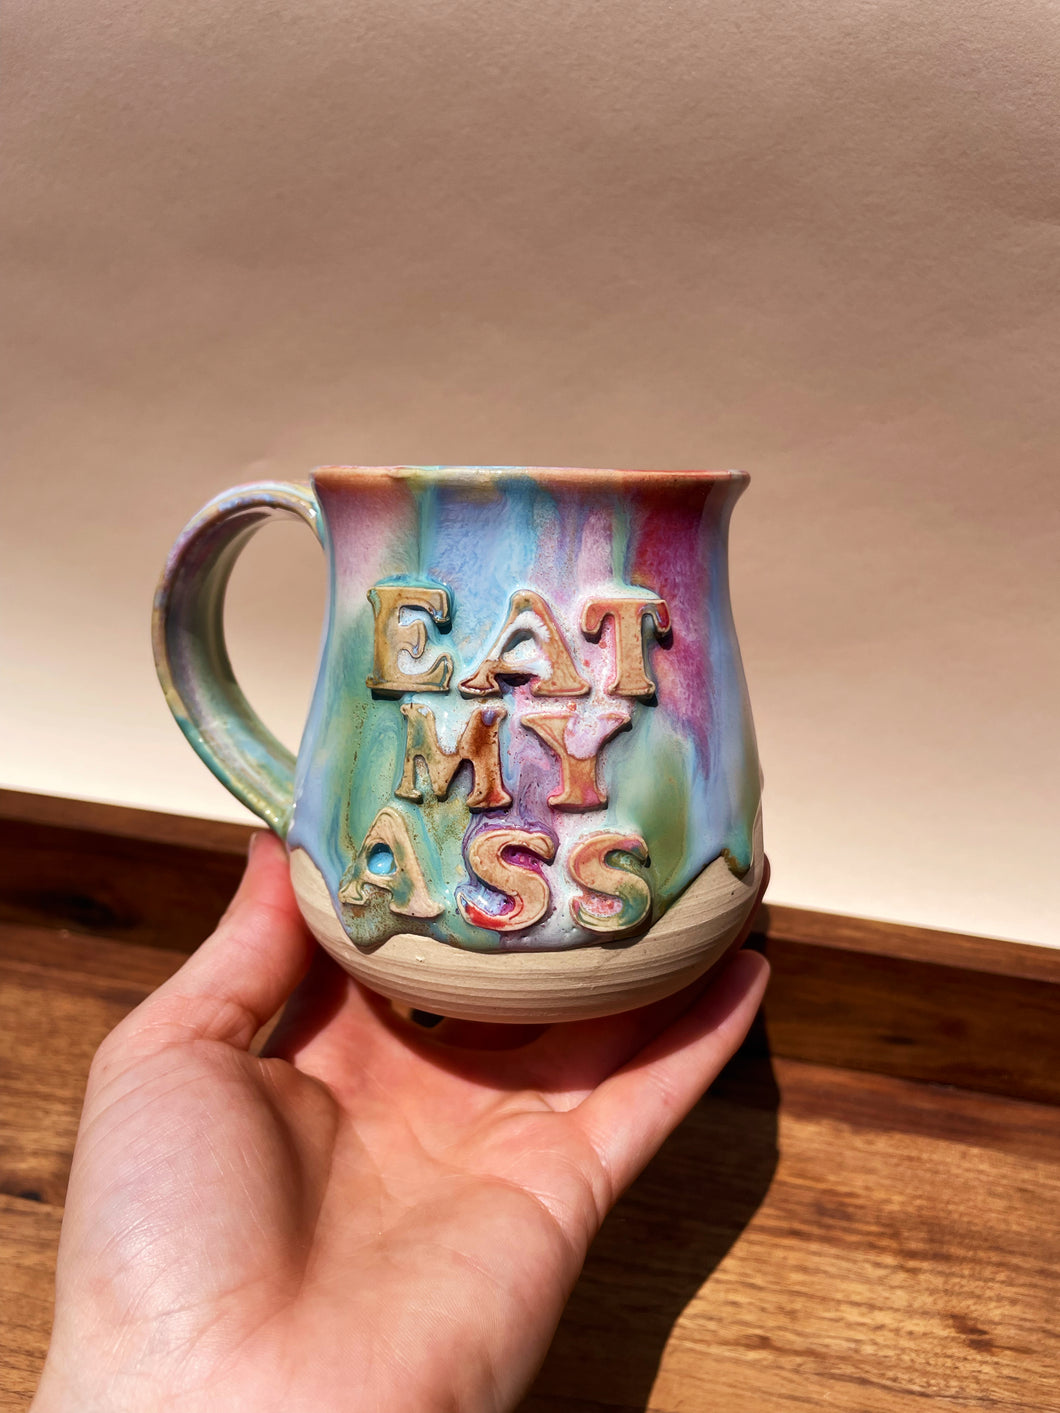 Eat My Ass Mug No. 3